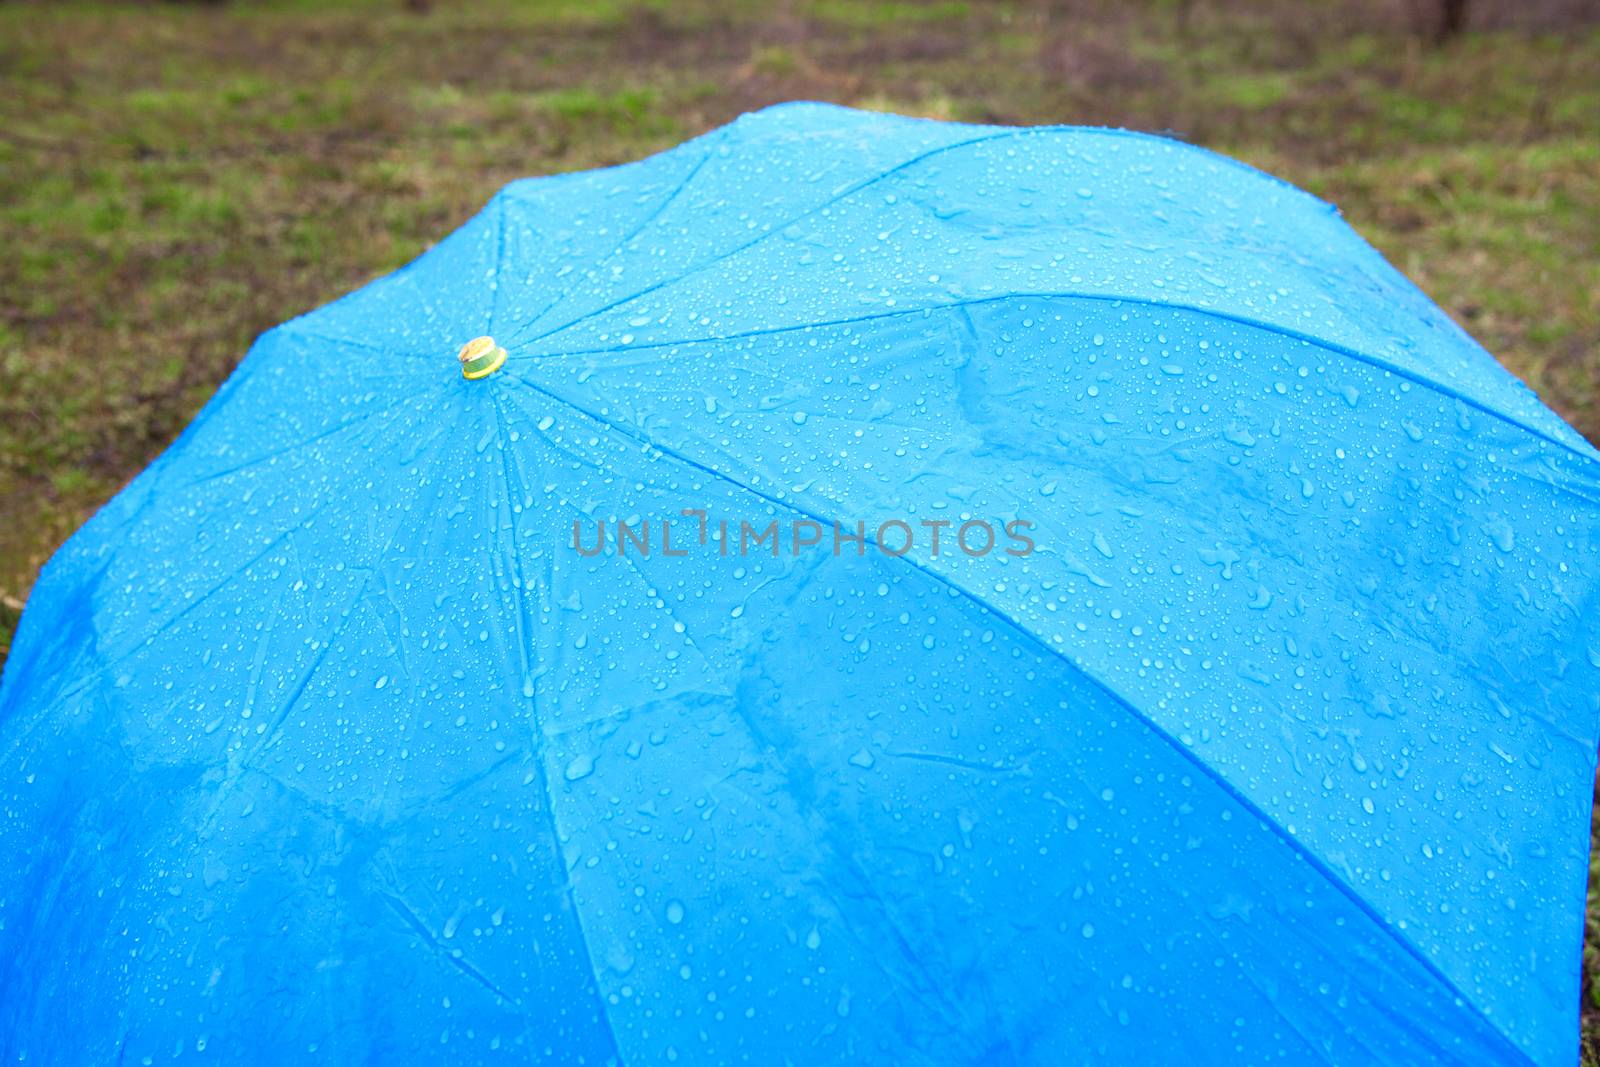 background with rainy umbrella